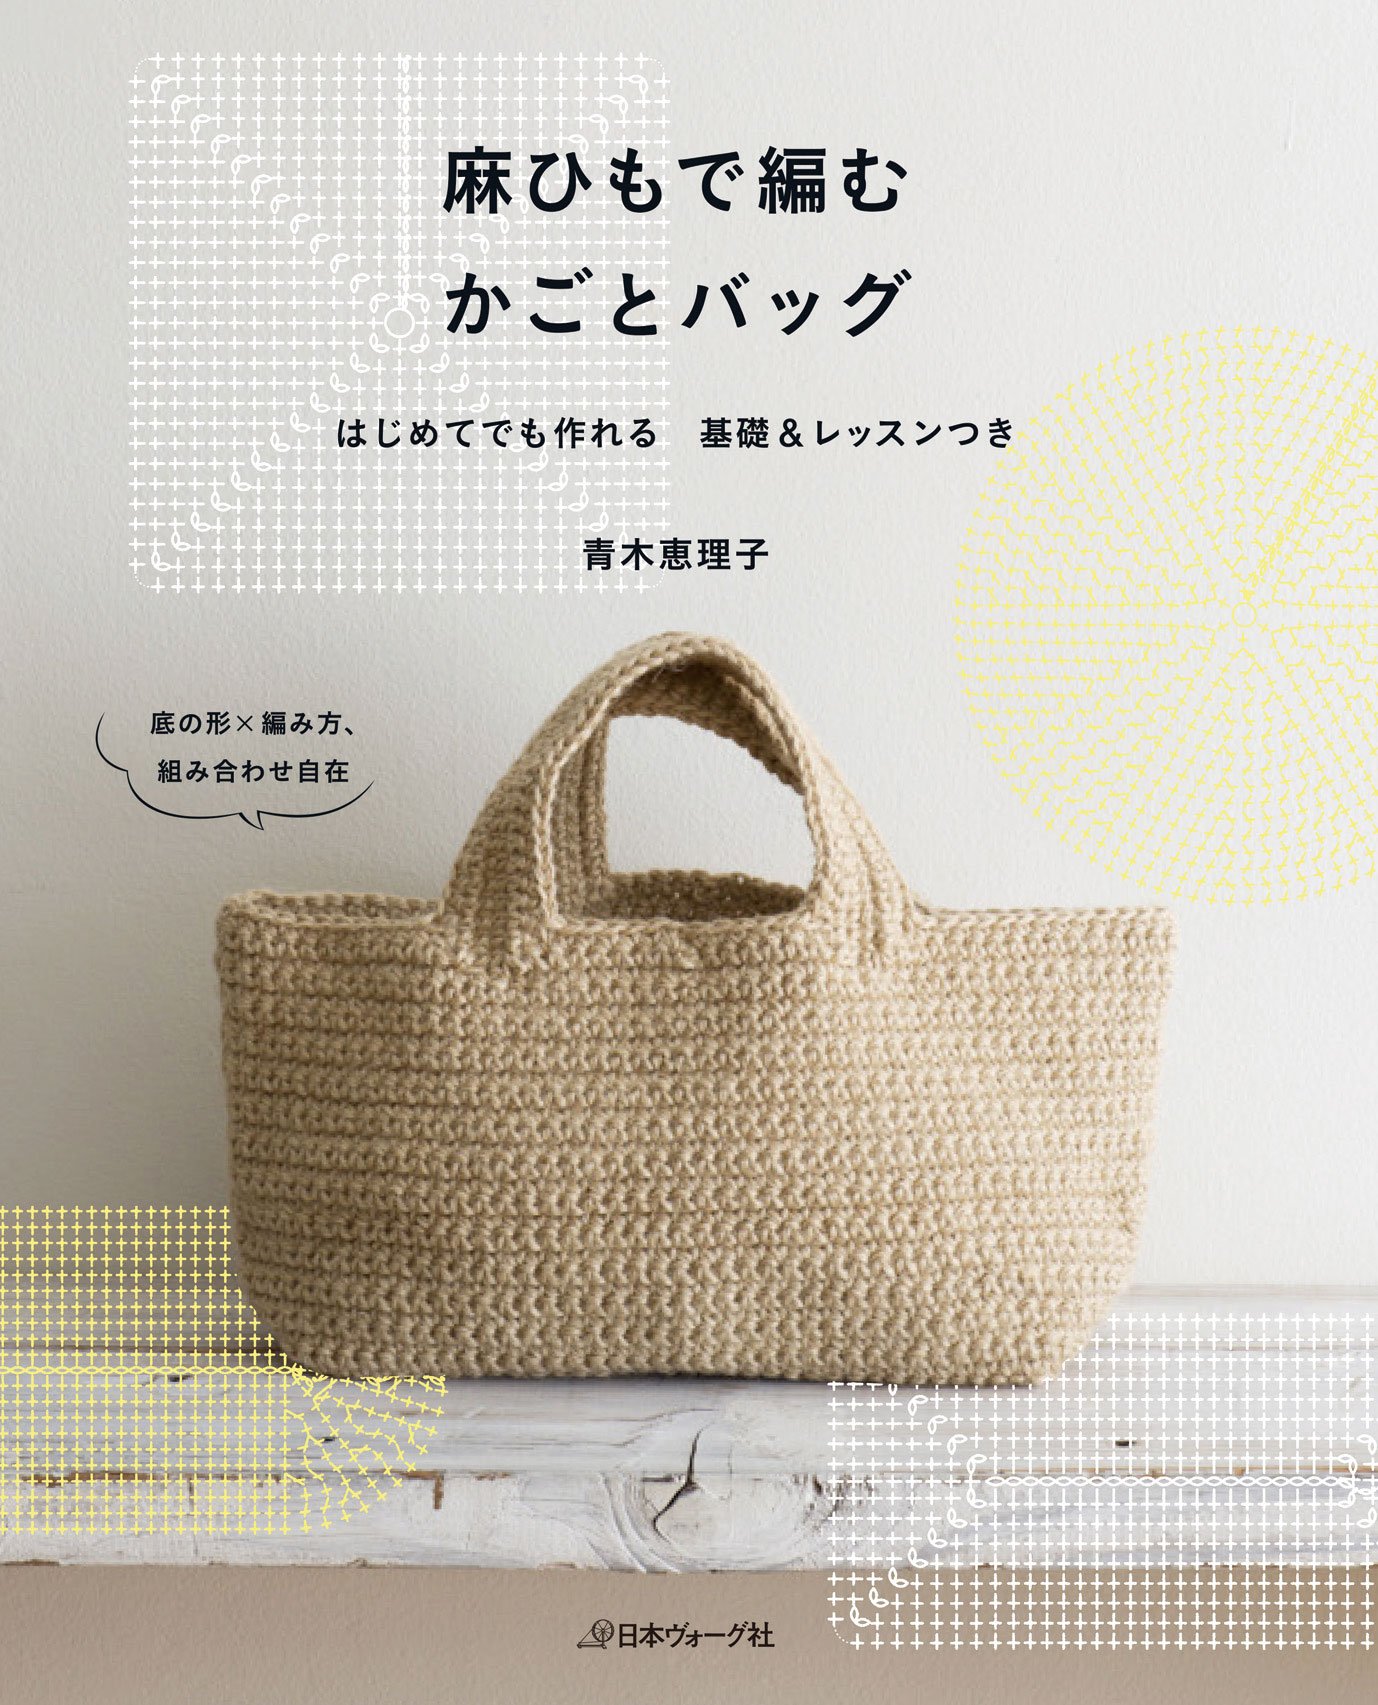 Basket & Bag knitting with linen Eriko Aoki 